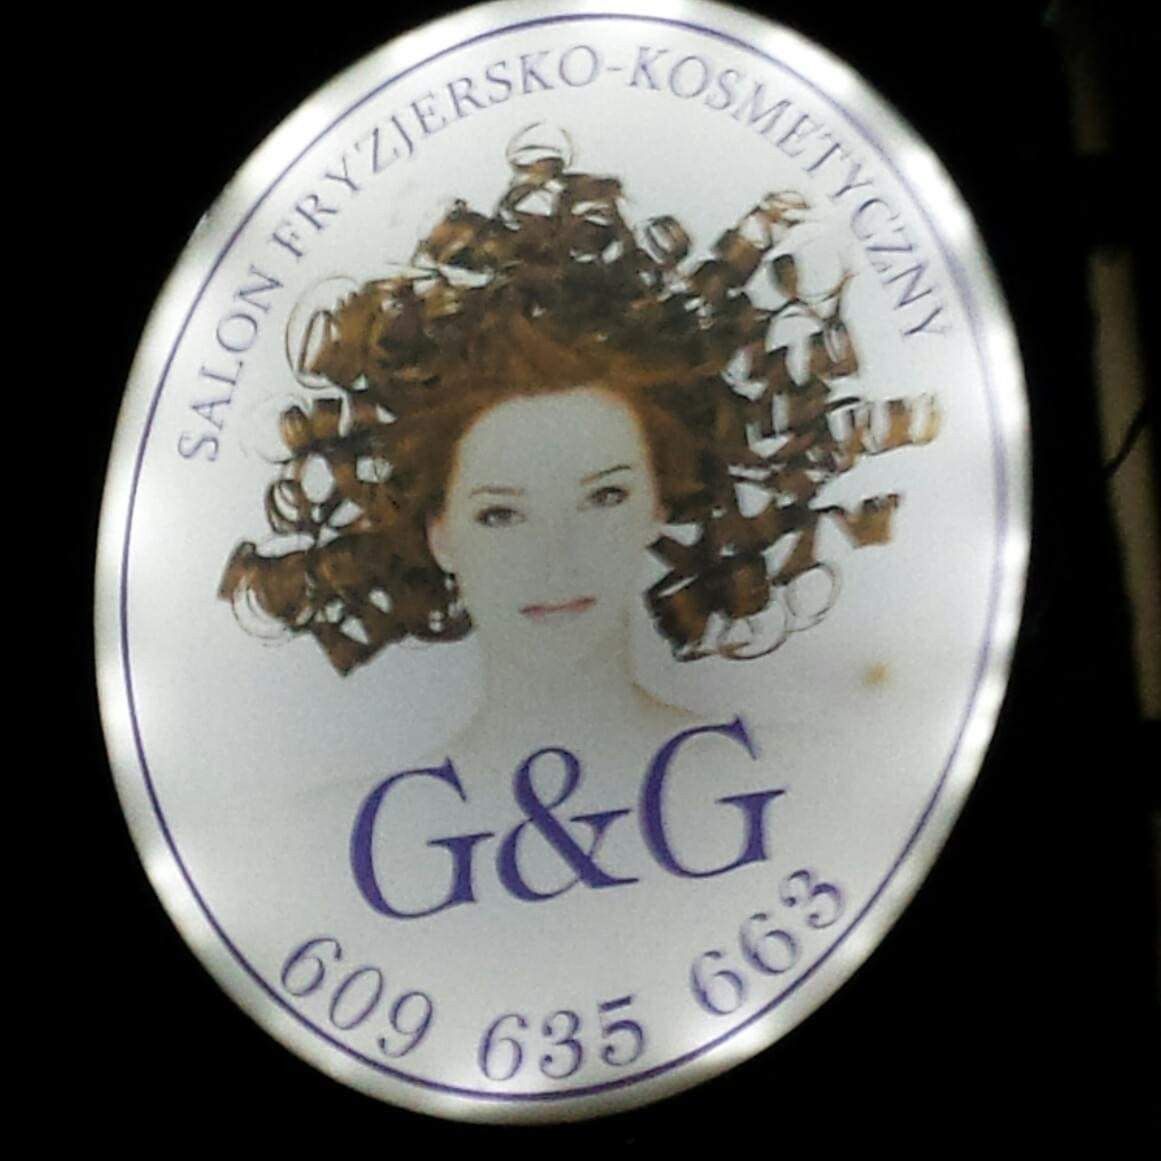 Salon Fryzjersko-kosmetyczny G&G, Główna 151, 54-061, Wrocław, Fabryczna